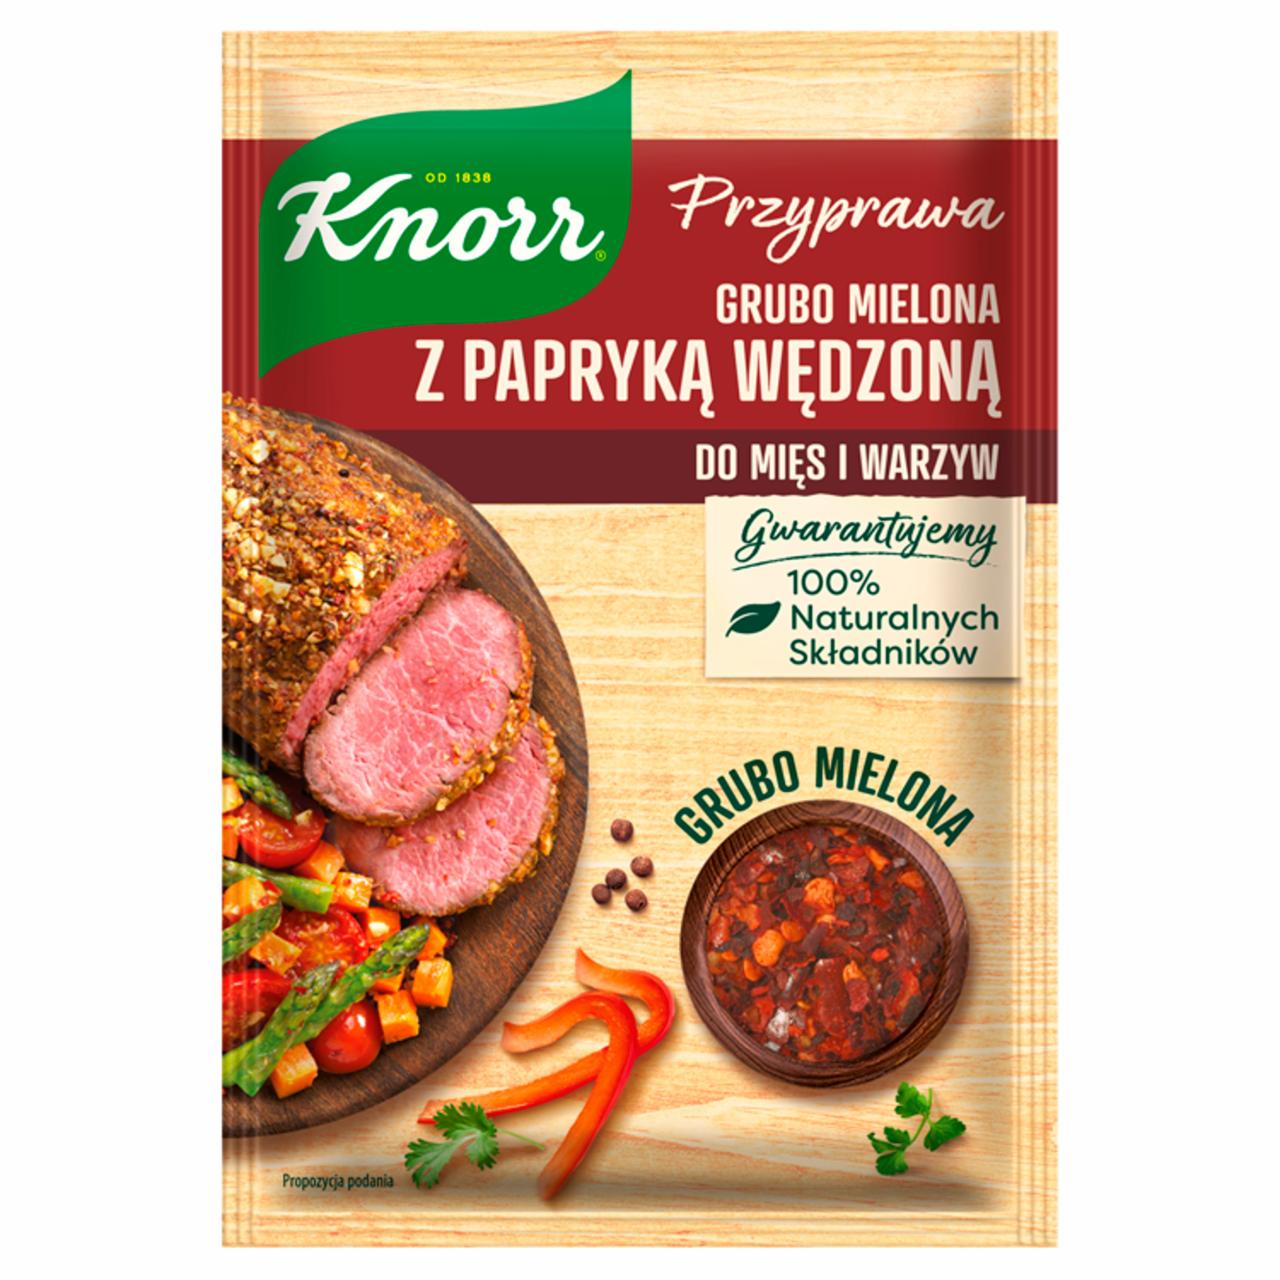 Zdjęcia - Knorr Przyprawa grubo mielona z papryką wędzoną 20 g